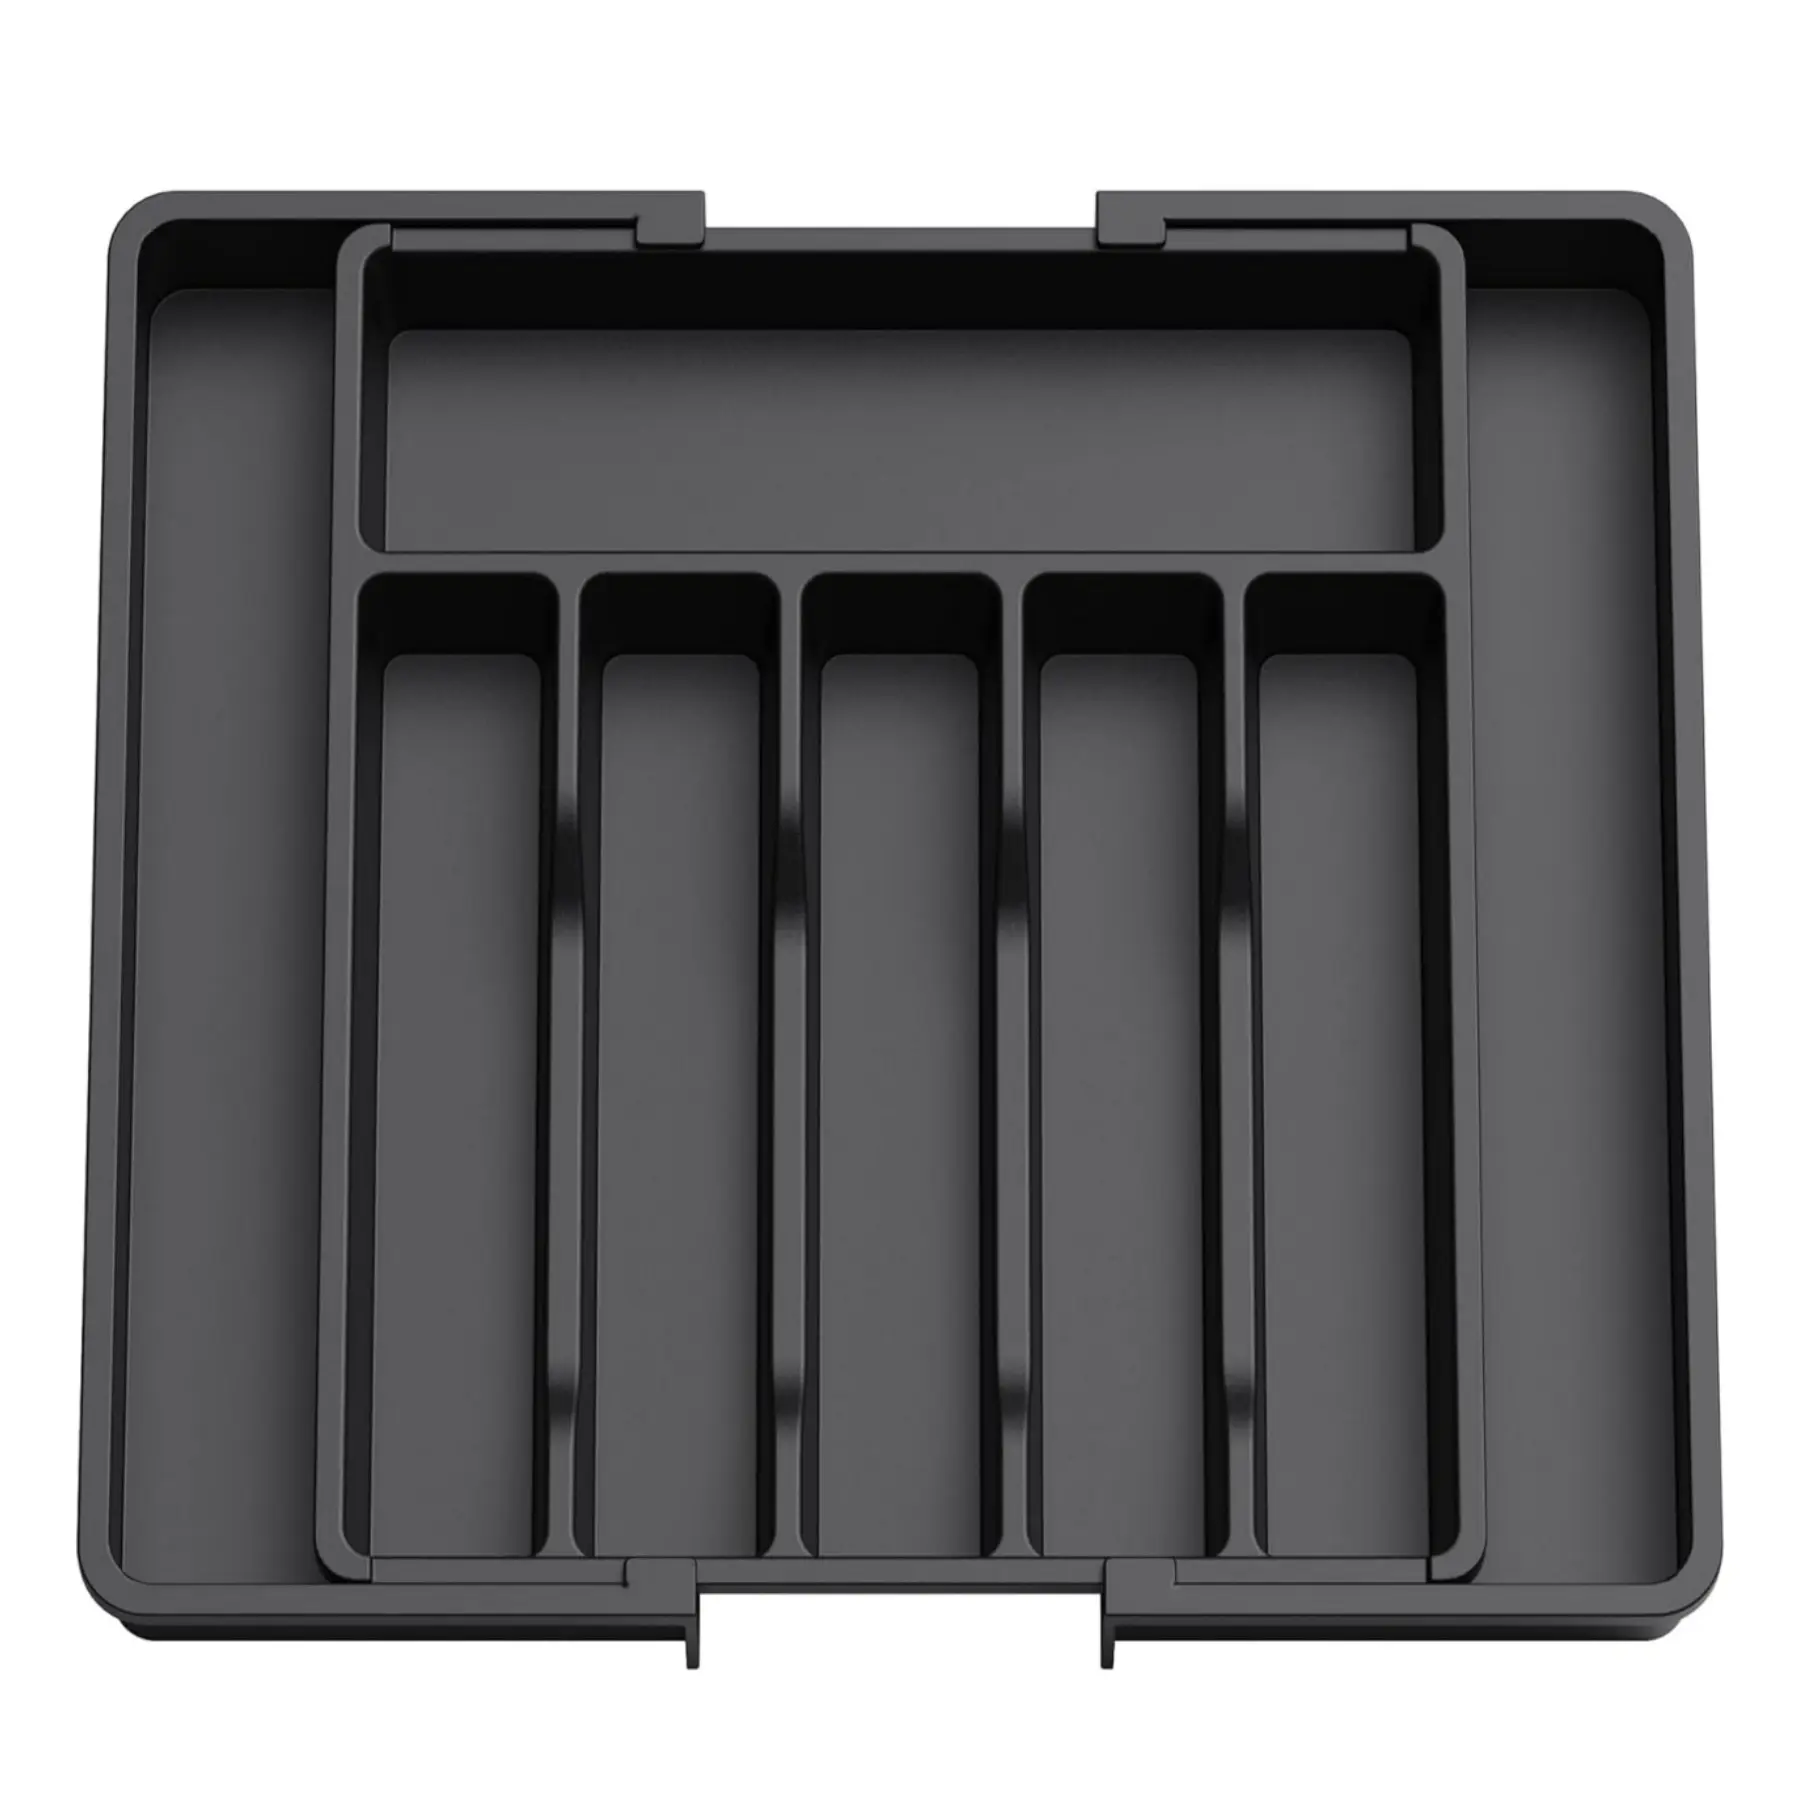 Erweiterbares Besteck-Tablett einstellbares kompaktes Besteck-Aufbewahrungs-Tablett erweiterbare Schublade Besteck-Aufbewahrungs-Tablets